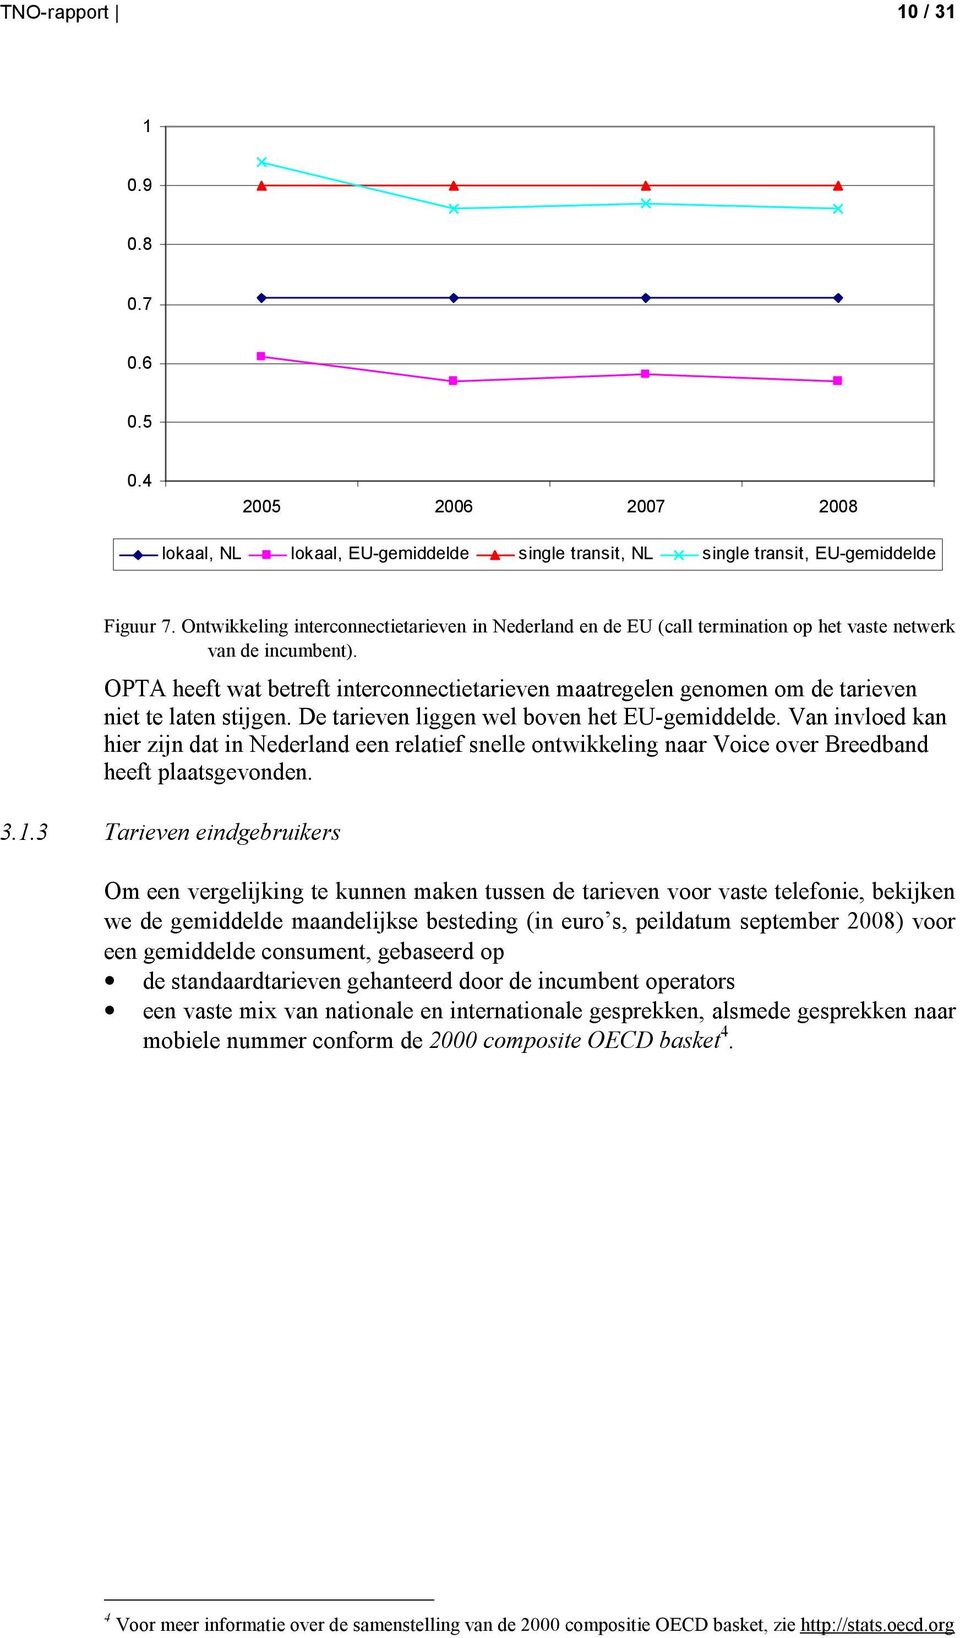 OPTA heeft wat betreft interconnectietarieven maatregelen genomen om de tarieven niet te laten stijgen. De tarieven liggen wel boven het EU-gemiddelde.